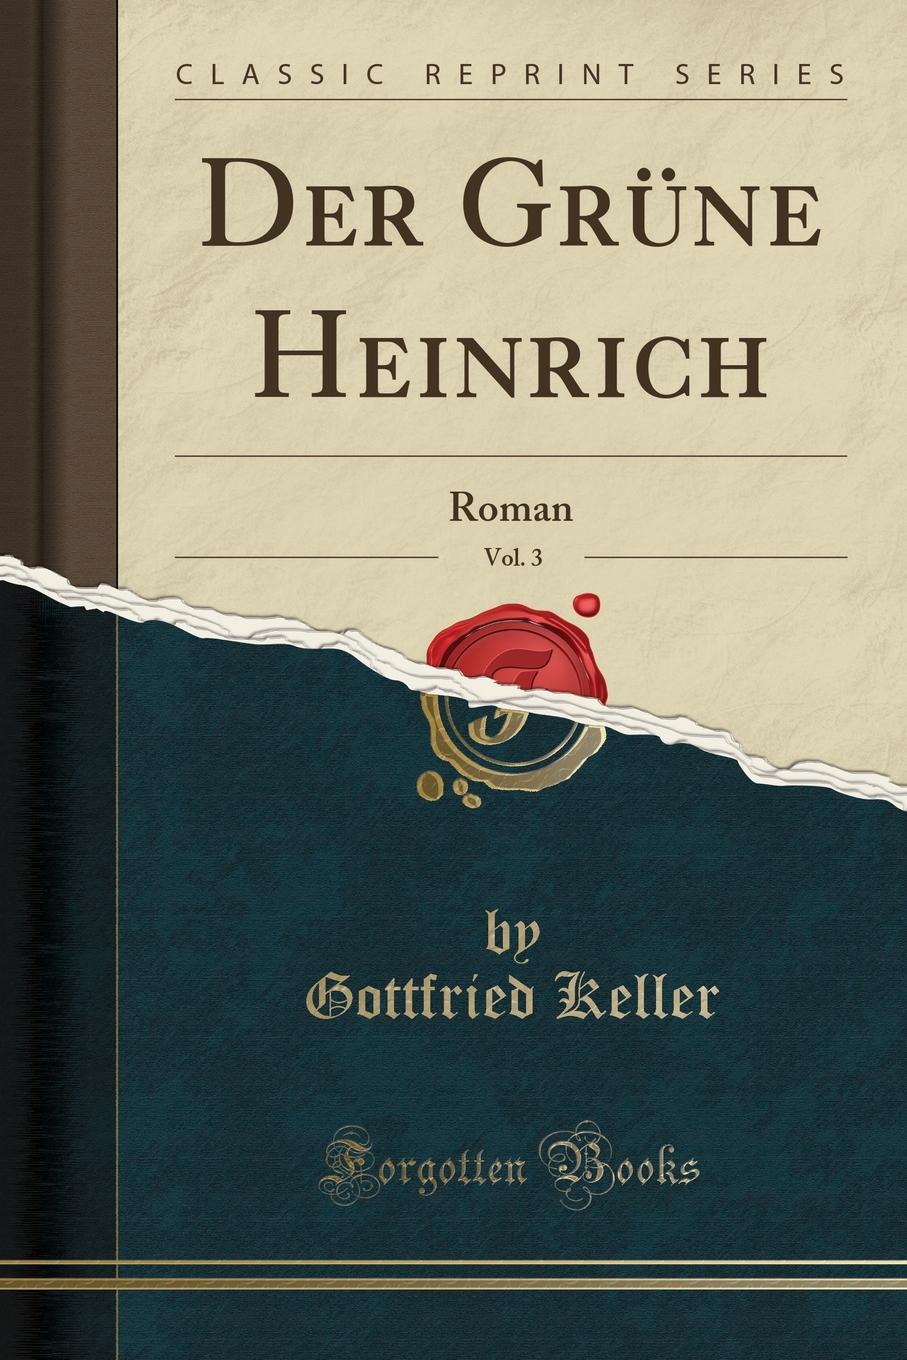 Der Grune Heinrich, Vol. 3. Roman (Classic Reprint)